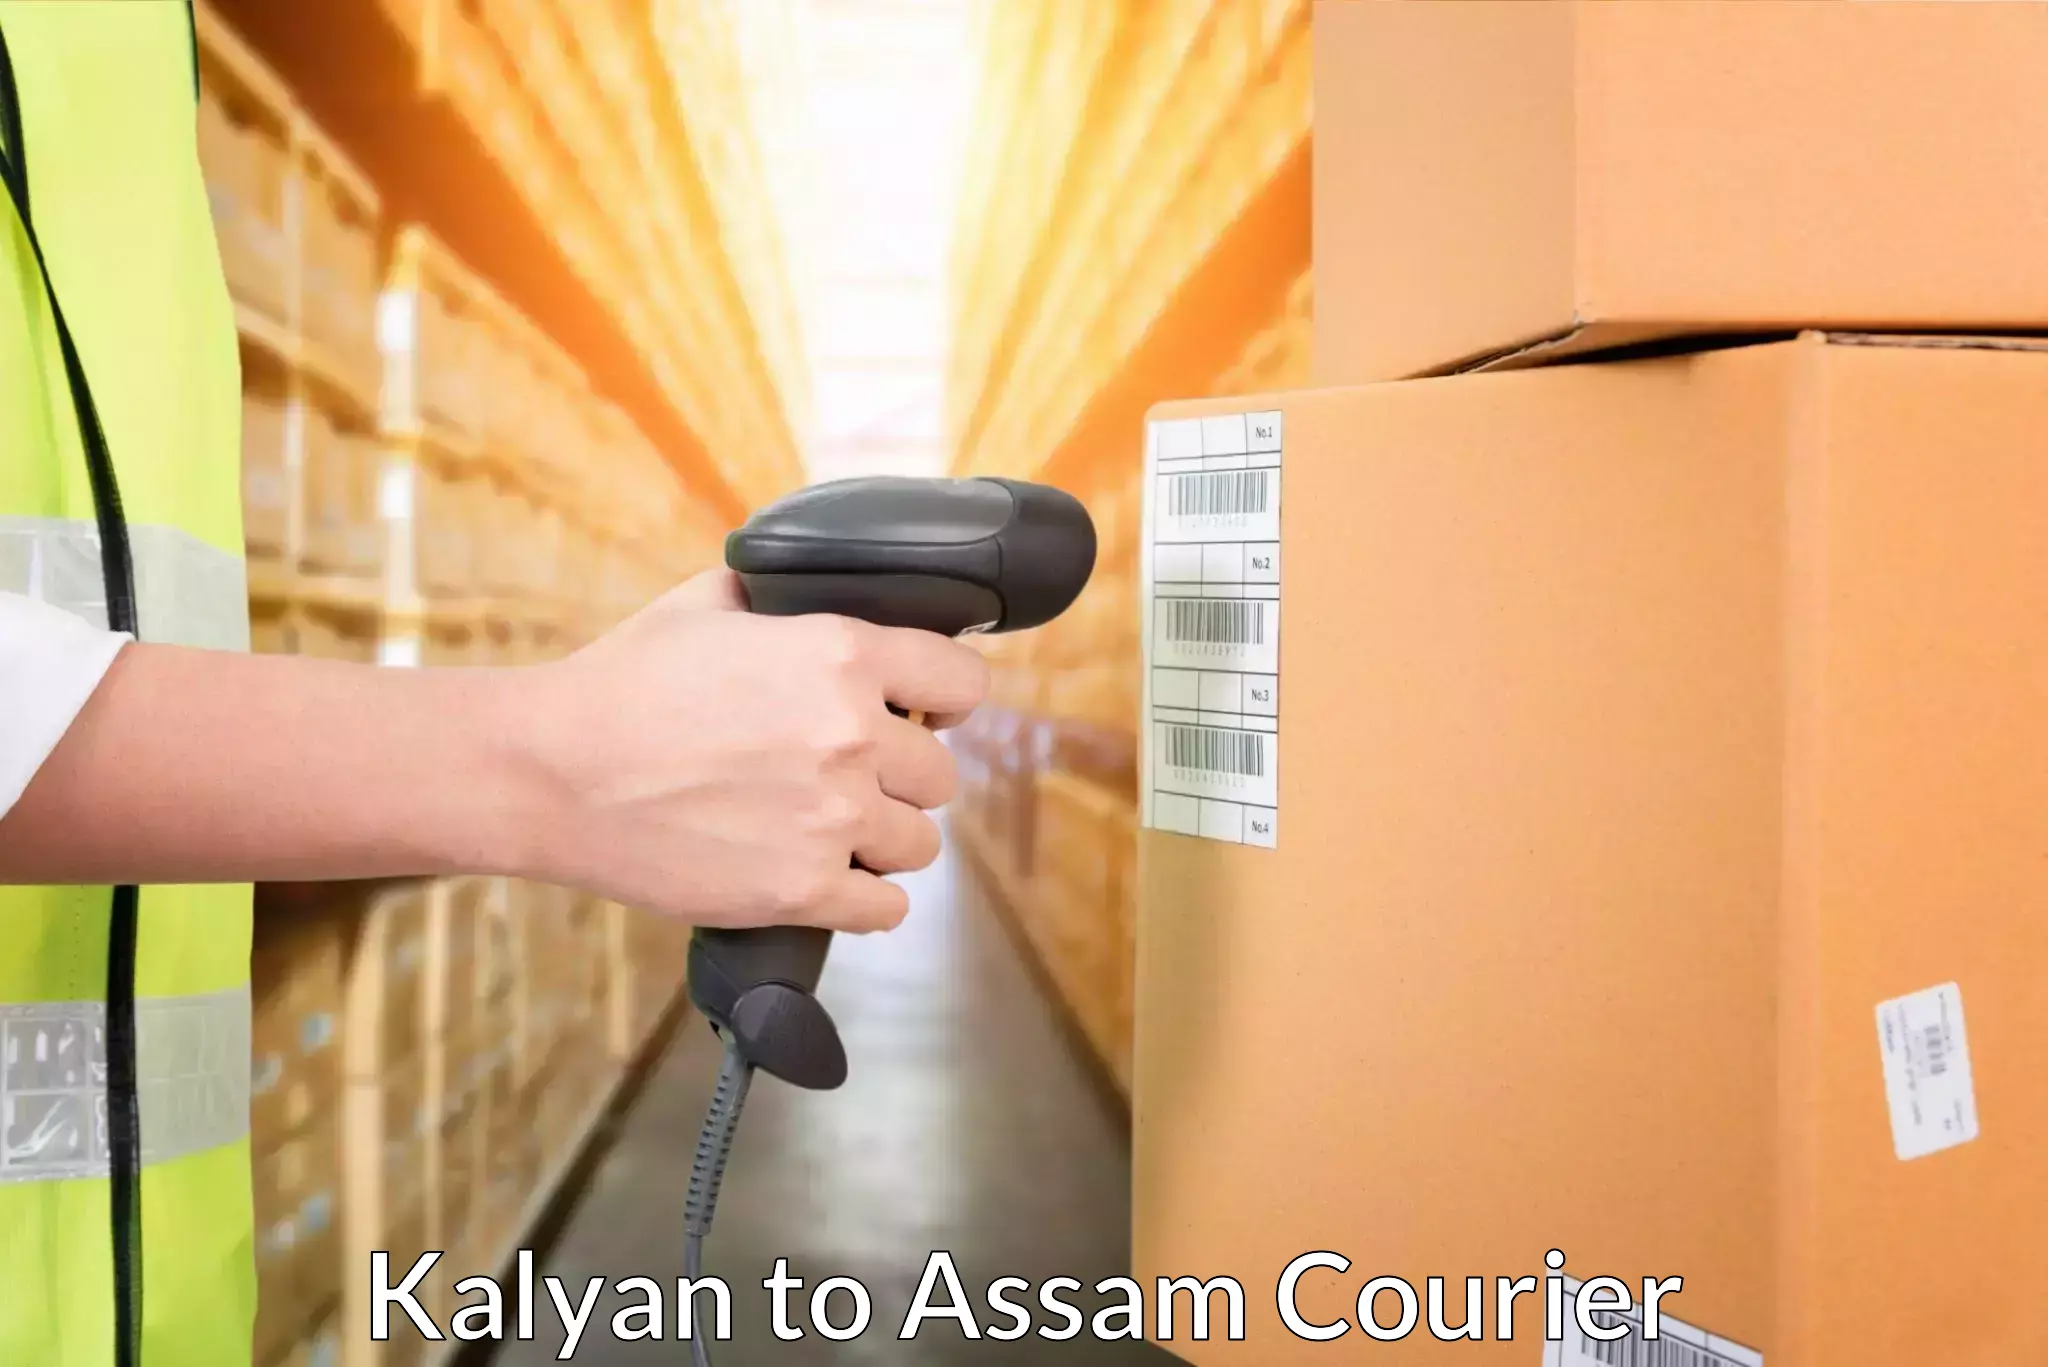 Automated shipping processes Kalyan to Hailakandi